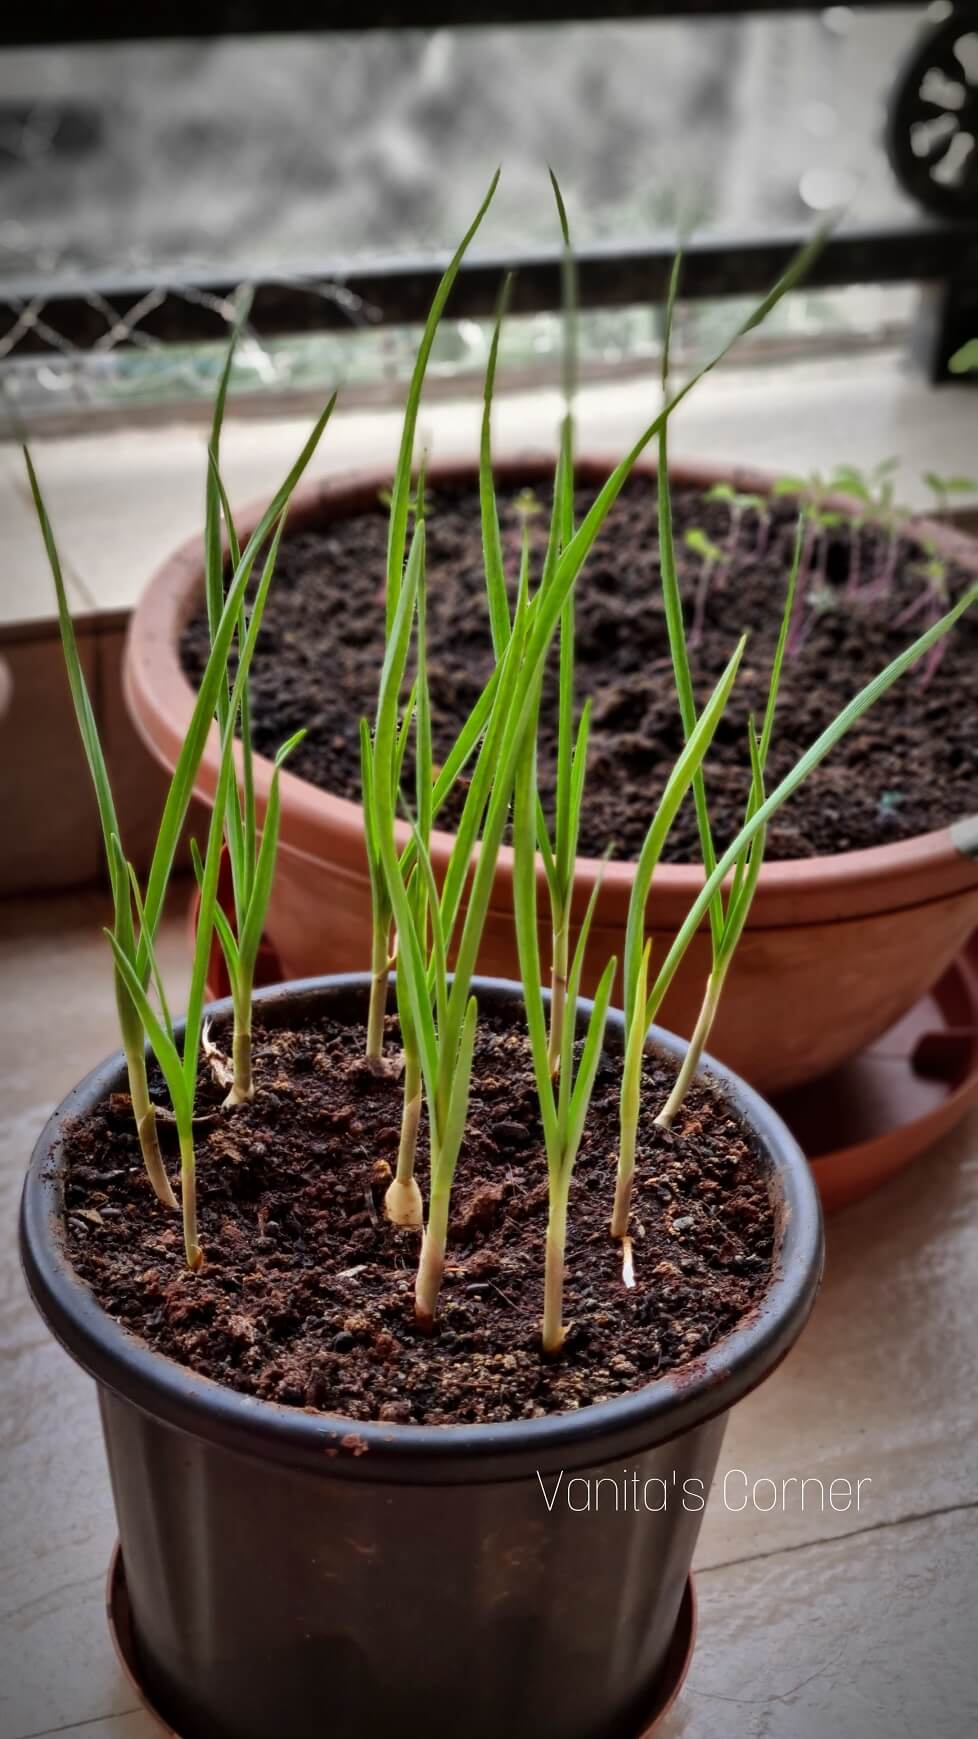 Growing green garlic at home